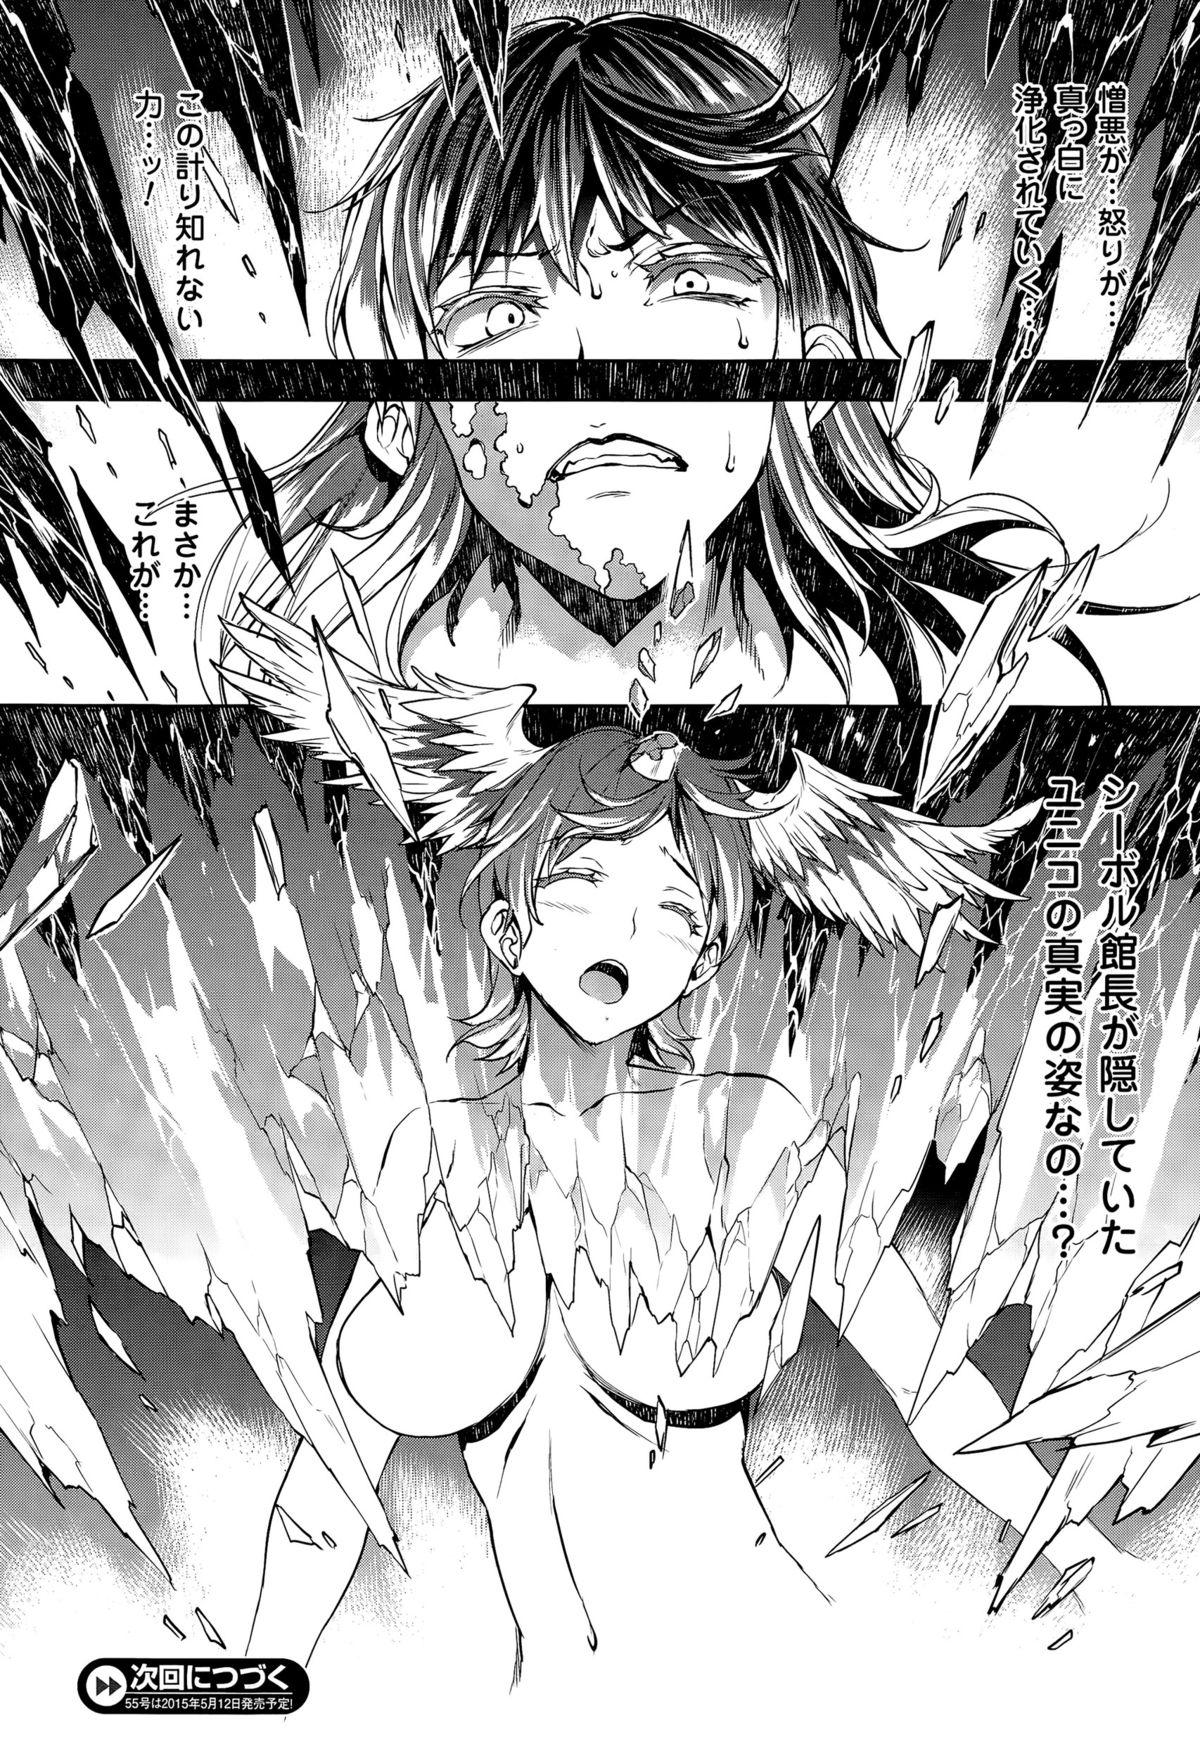 [Erect Sawaru] Shinkyoku no Grimoire -PANDRA saga 2nd story- CH 13-20 78